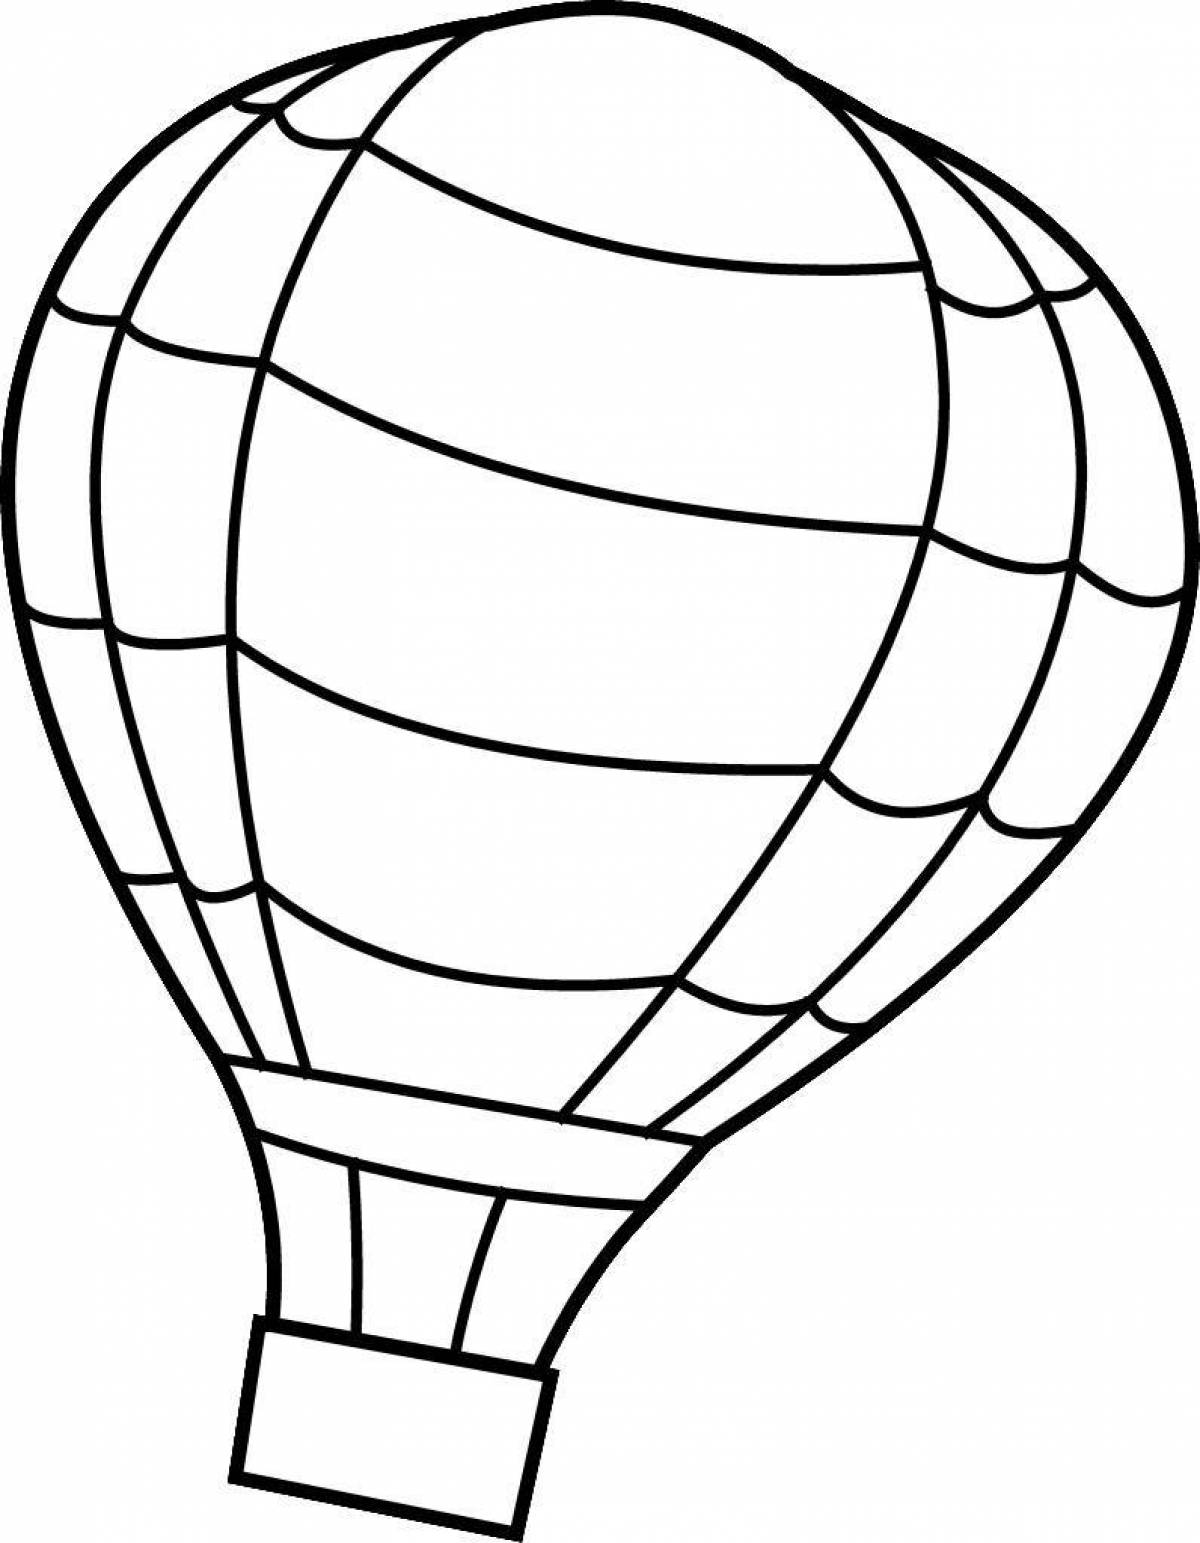 Раскраска гламурный воздушный шар с корзиной